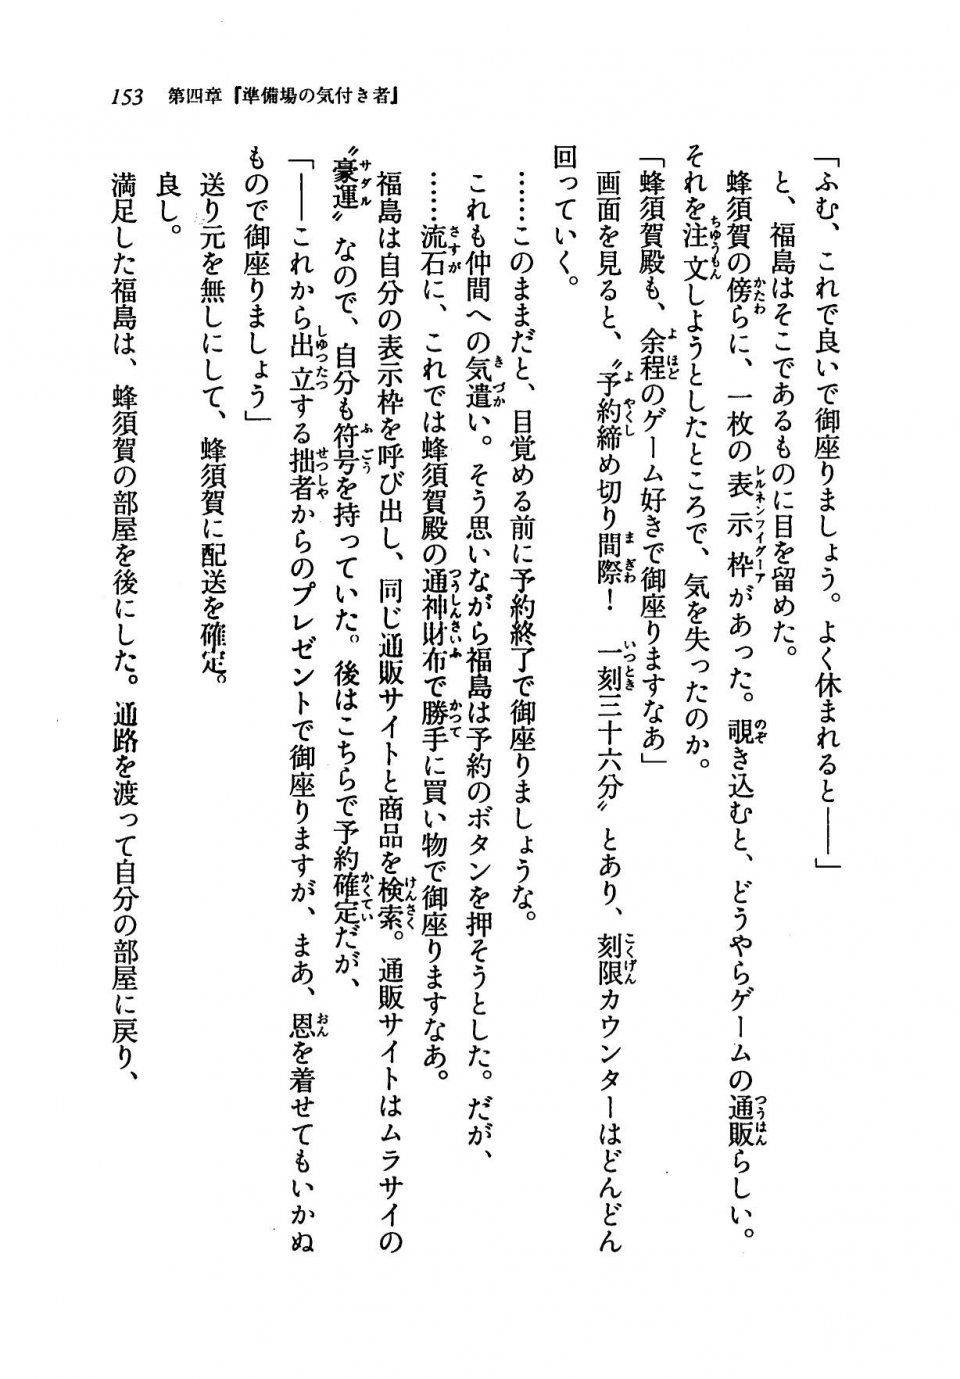 Kyoukai Senjou no Horizon LN Vol 19(8A) - Photo #153